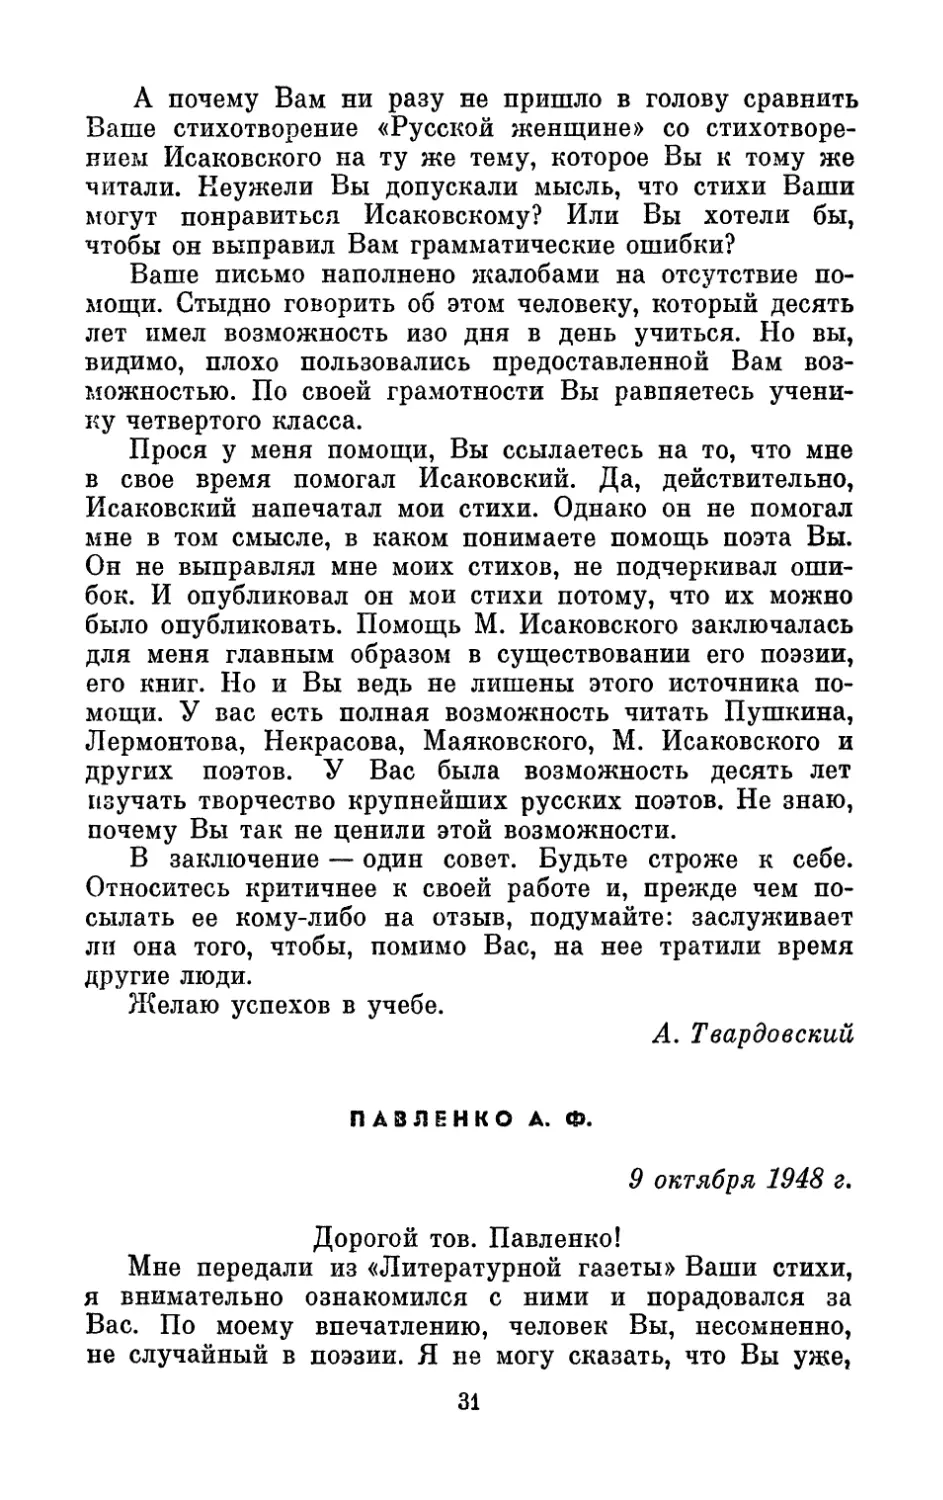 Павленко А. Ф., 9 октября 1948 г.